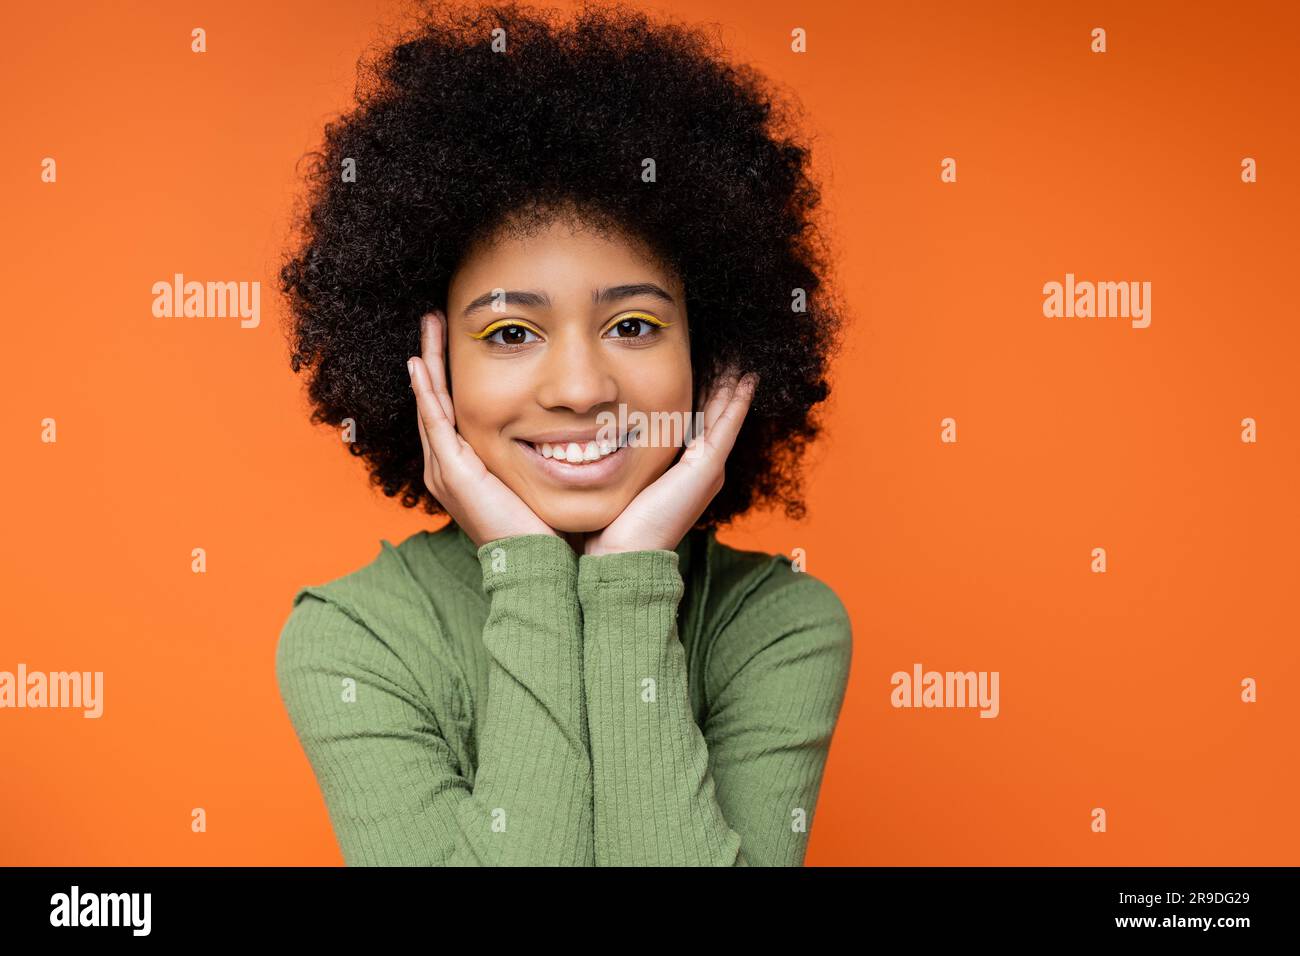 Ritratto di una ragazza africana americana con un audace trucco che indossa un abito verde e le guance toccanti mentre si trova isolata sulla cultura giovanile arancione Foto Stock